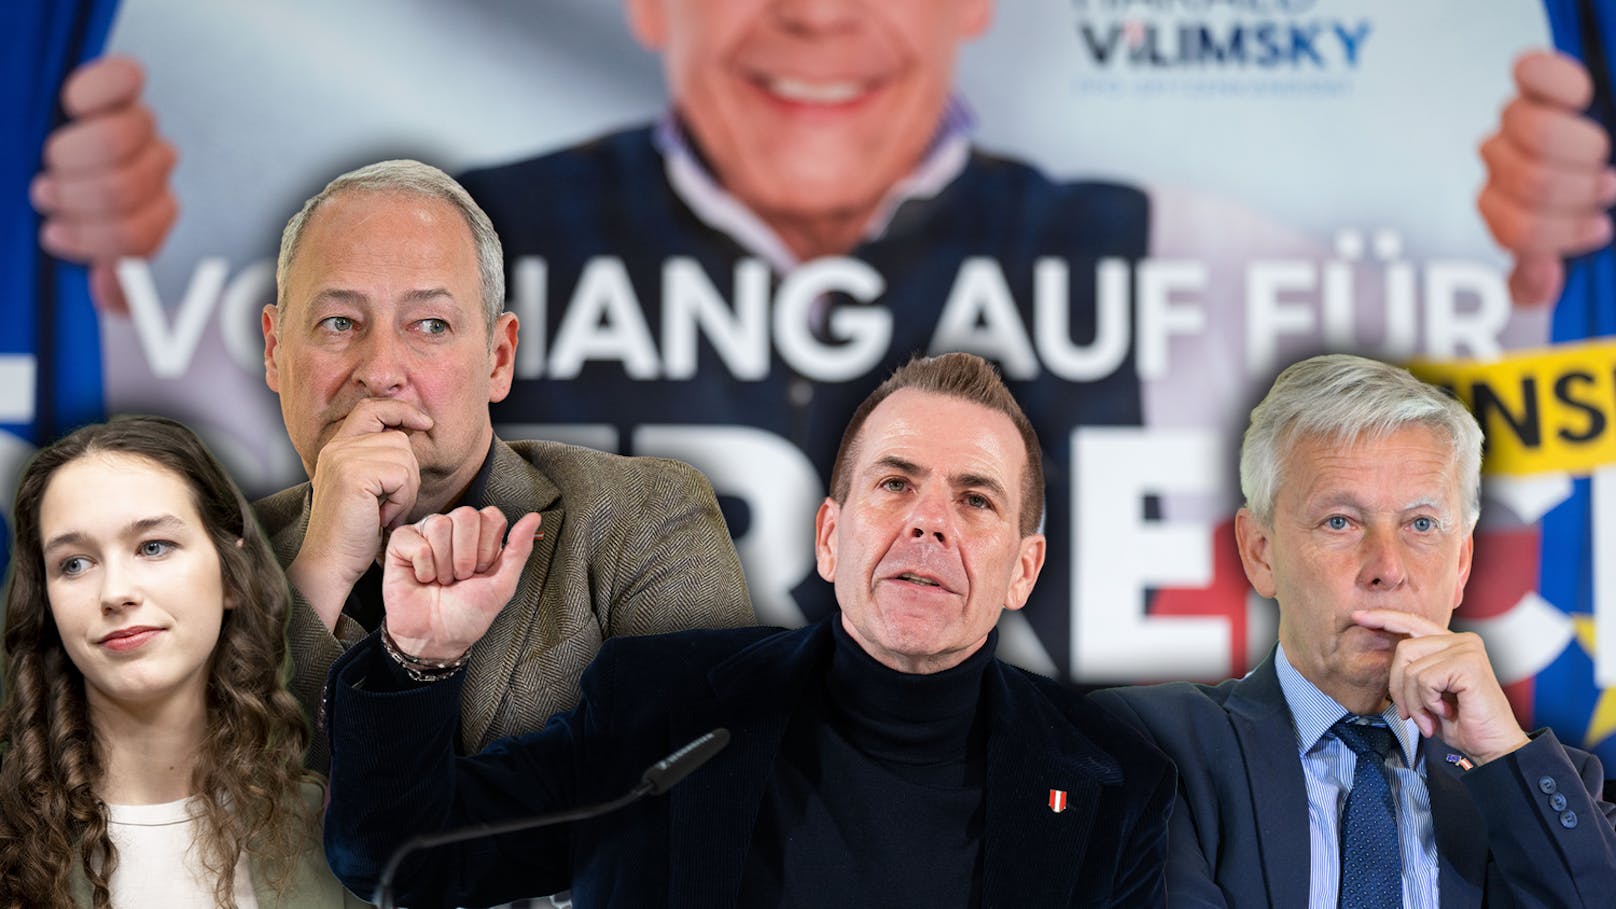 Hammer Umfrage – FPÖ auch in der EU-Wahl weit vorn